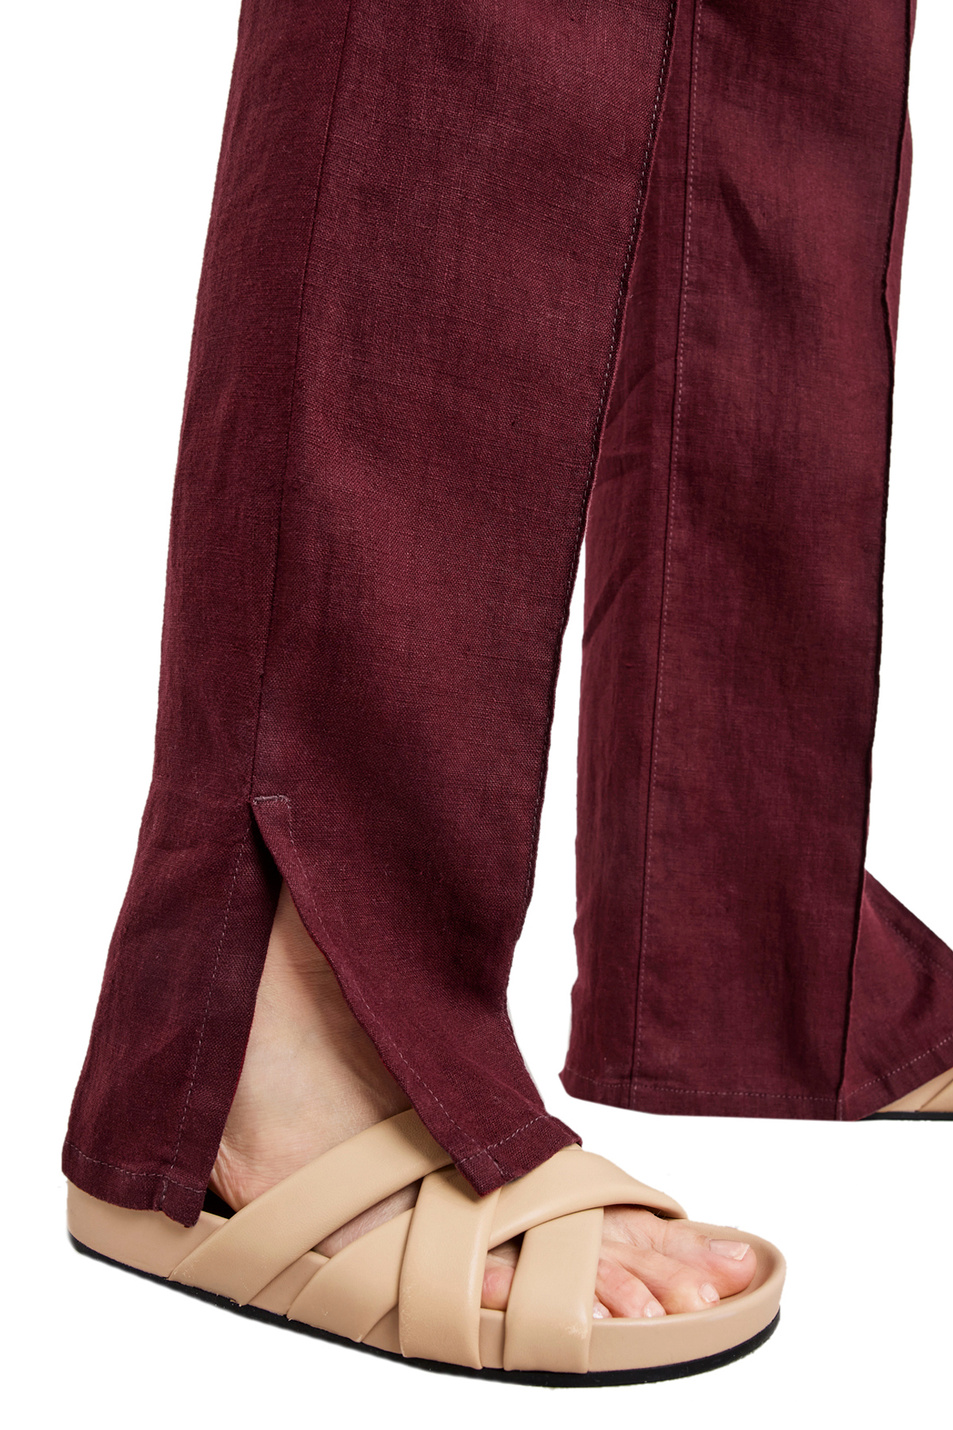 Женский Gerry Weber Льняные брюки с поясом (цвет ), артикул 622085-66225 -Classic Fit | Фото 4